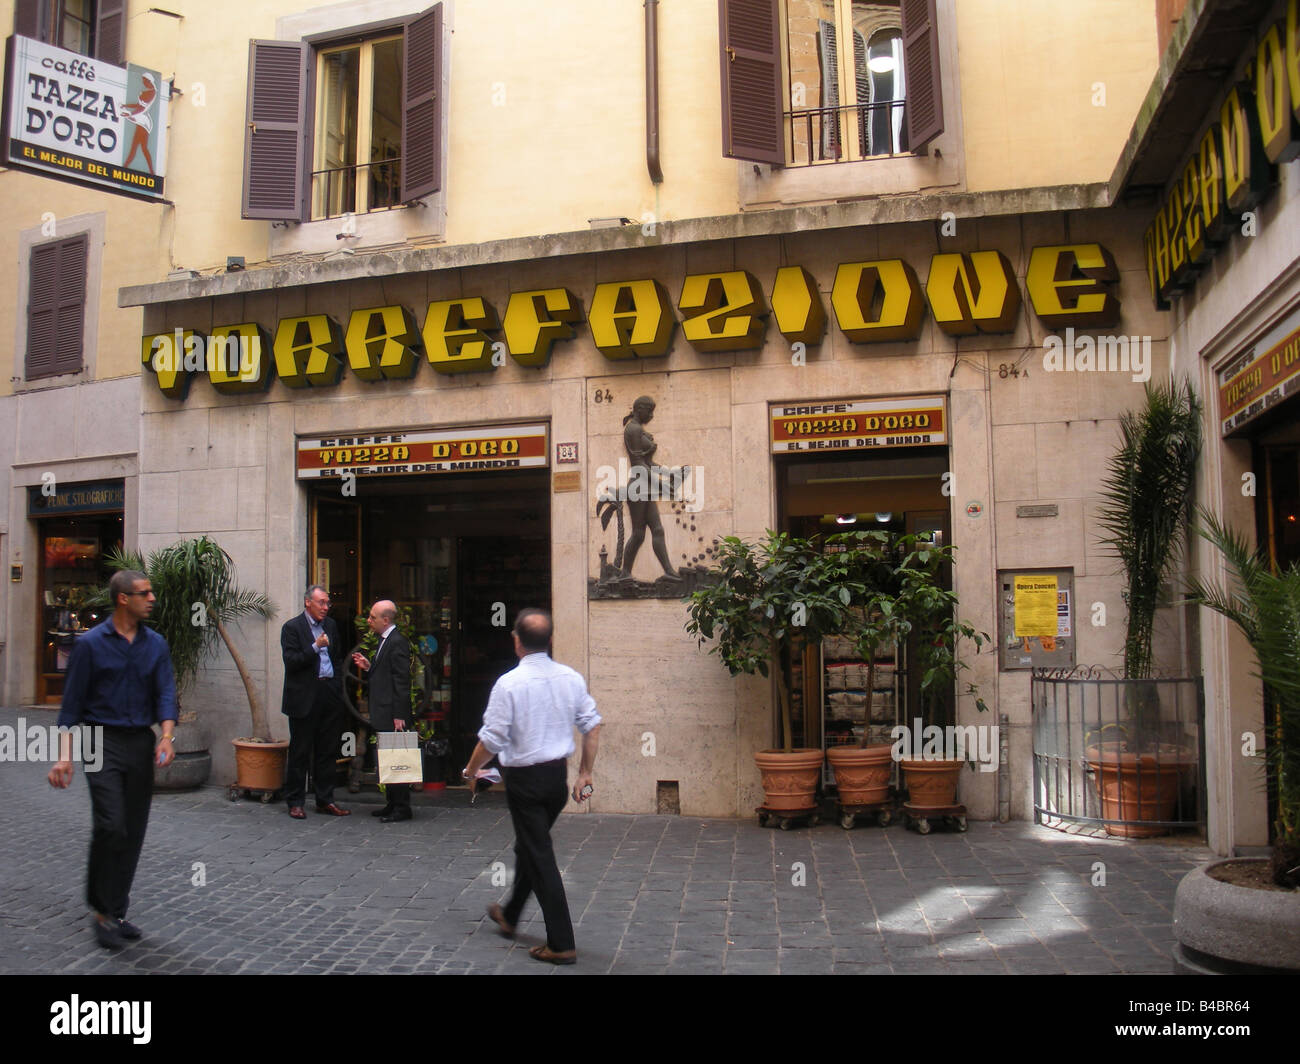 Scena di strada di fronte la casa del caffe torrefazione Tazza d'oro in Roma,  Italia Foto stock - Alamy